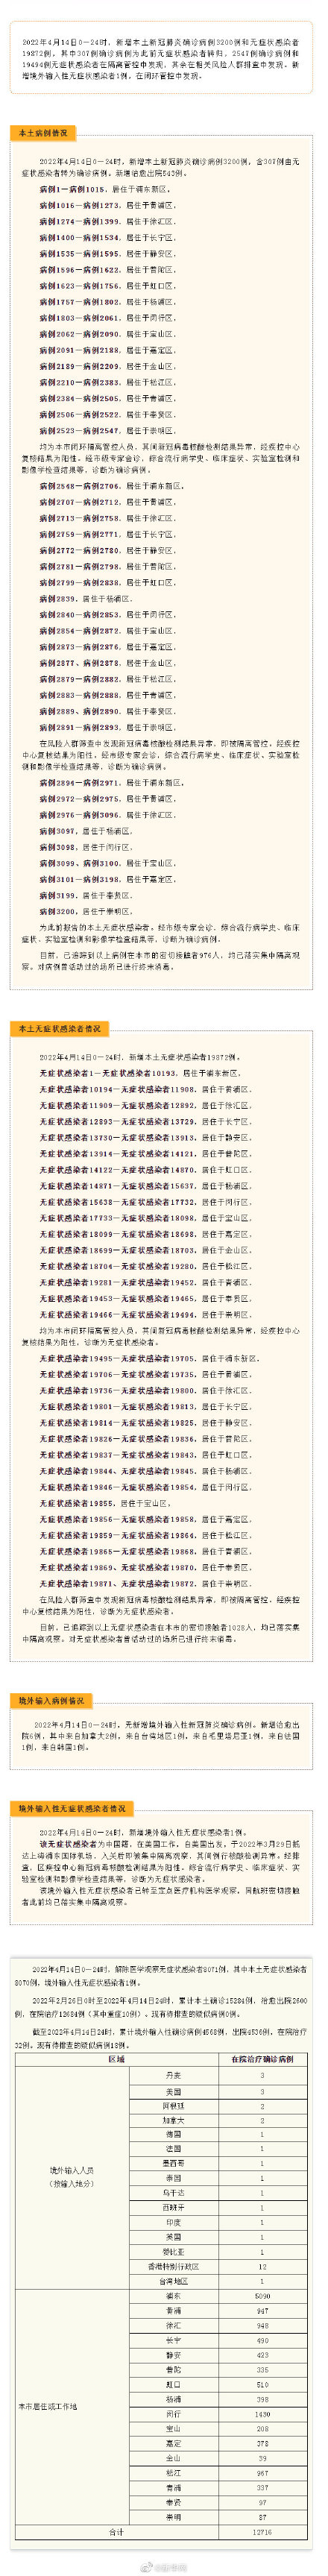 上海昨日新增本土确诊3200例、上海新增无症状感染者19872例